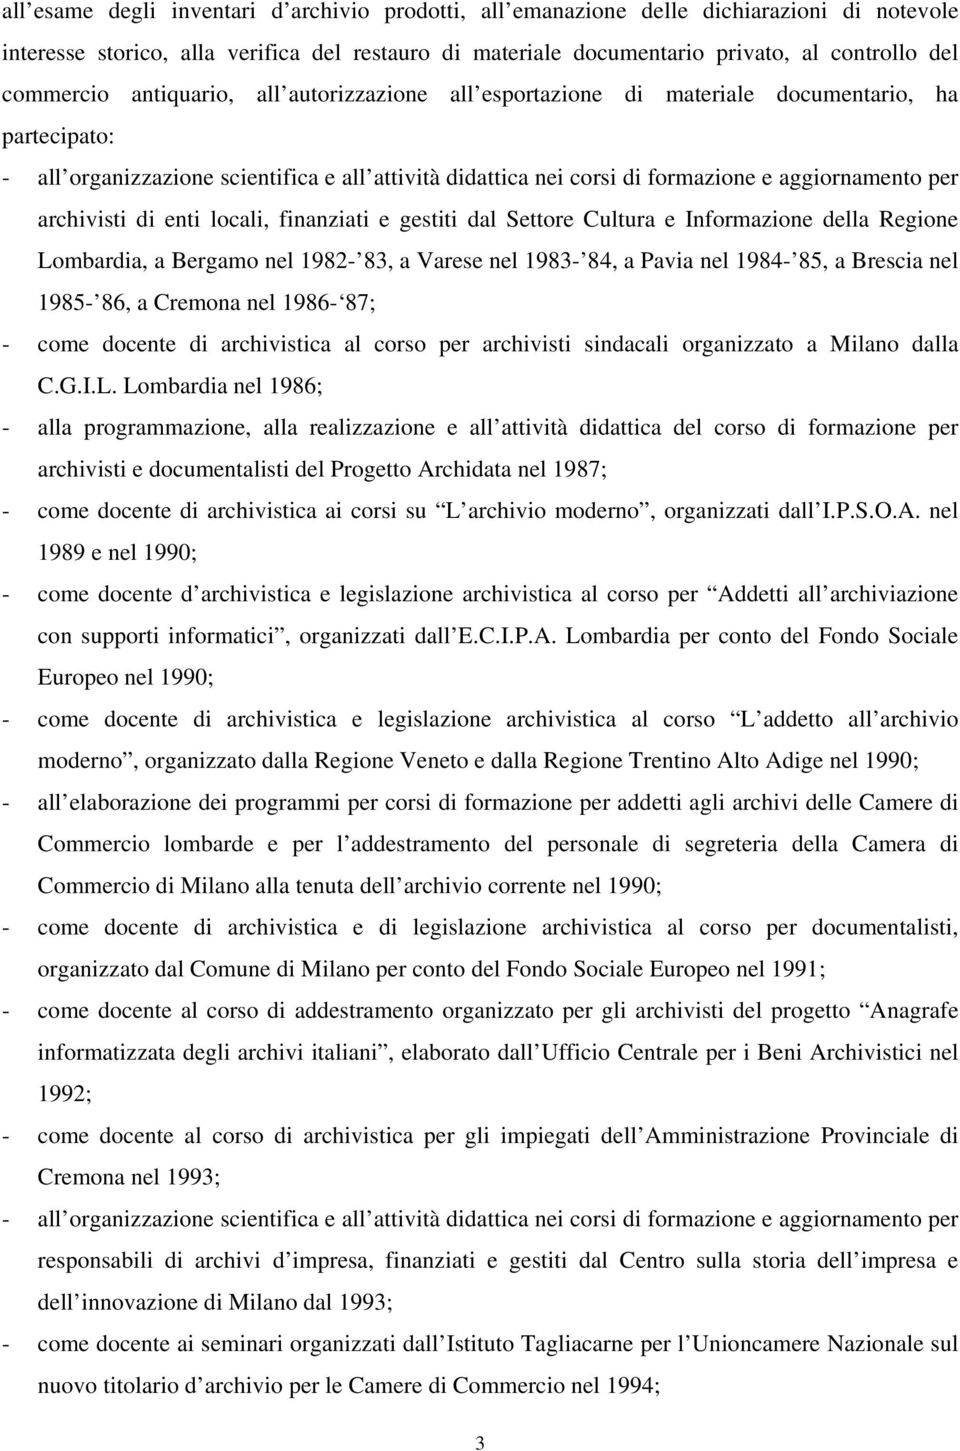 per archivisti di enti locali, finanziati e gestiti dal Settore Cultura e Informazione della Regione Lombardia, a Bergamo nel 1982-83, a Varese nel 1983-84, a Pavia nel 1984-85, a Brescia nel